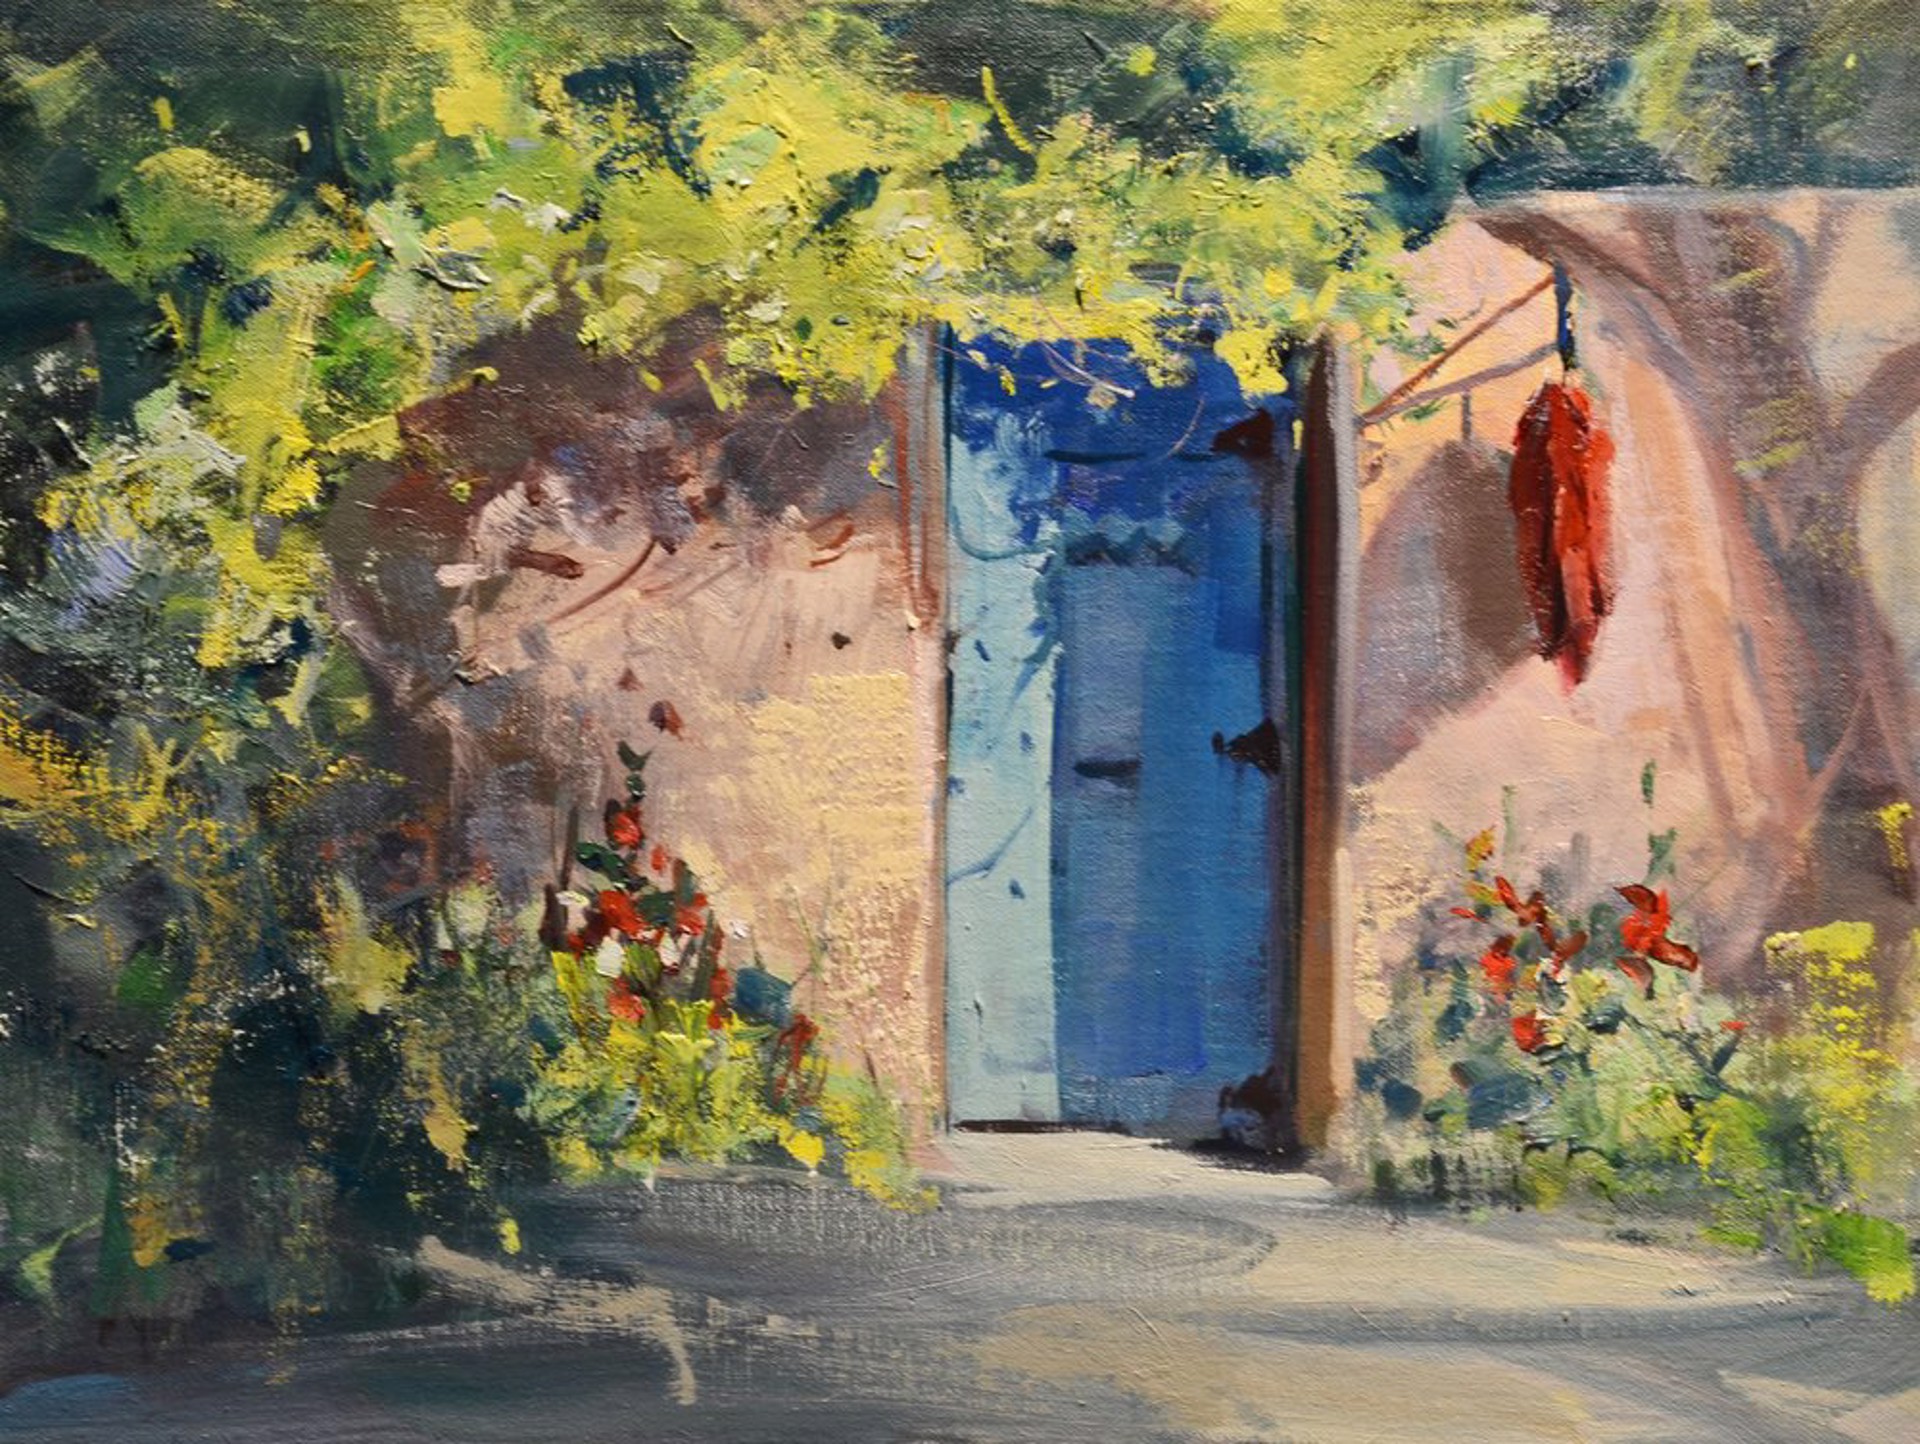 La Puerta Azule by Mike Wise